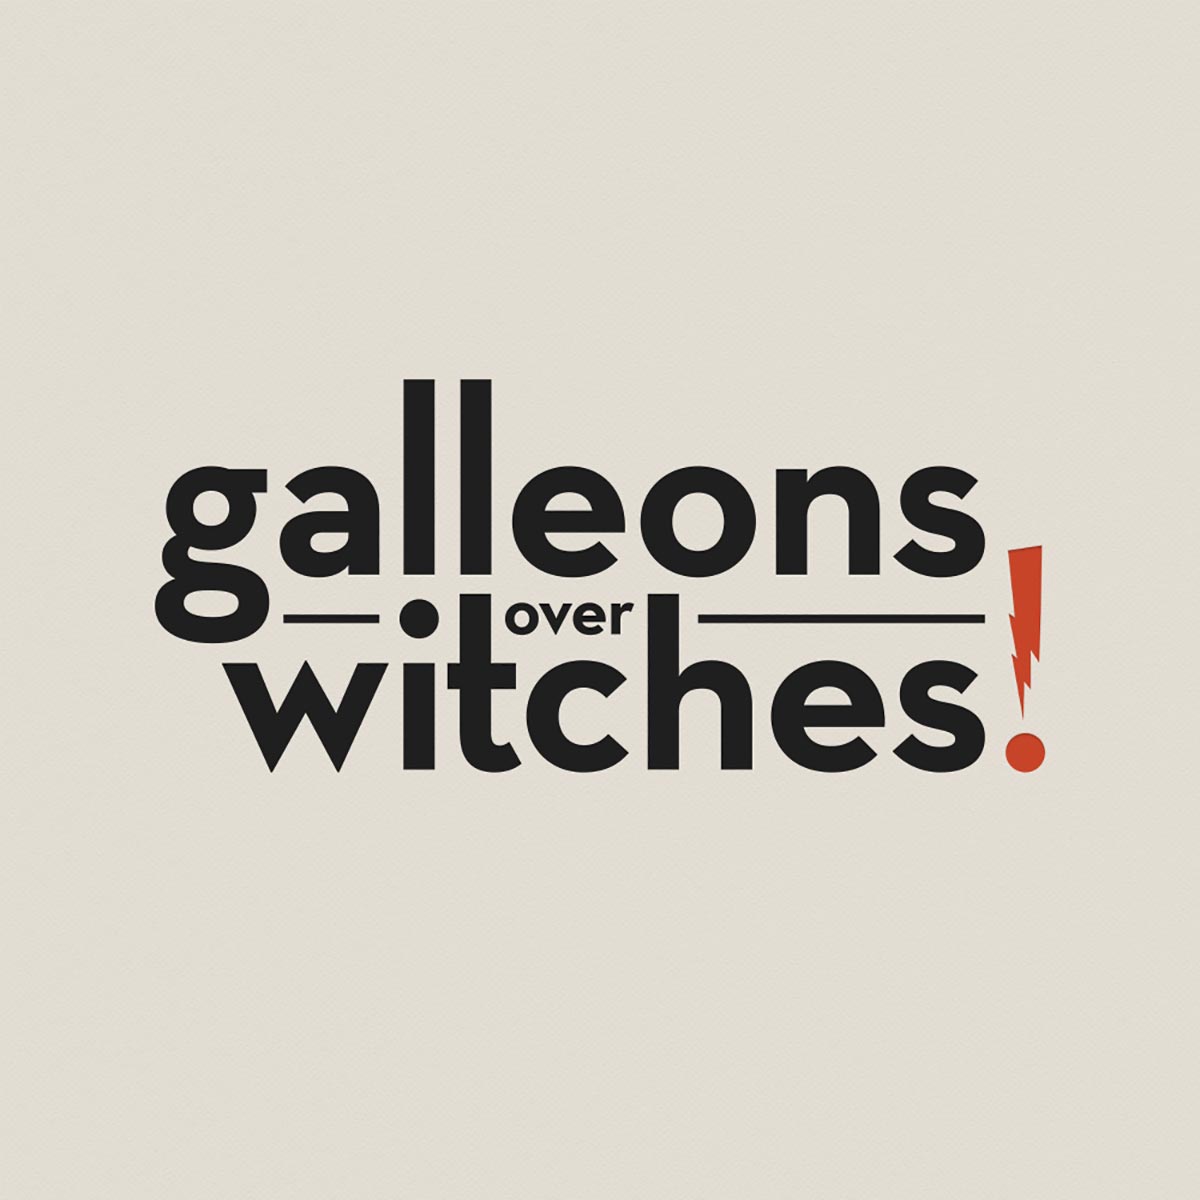 galleons